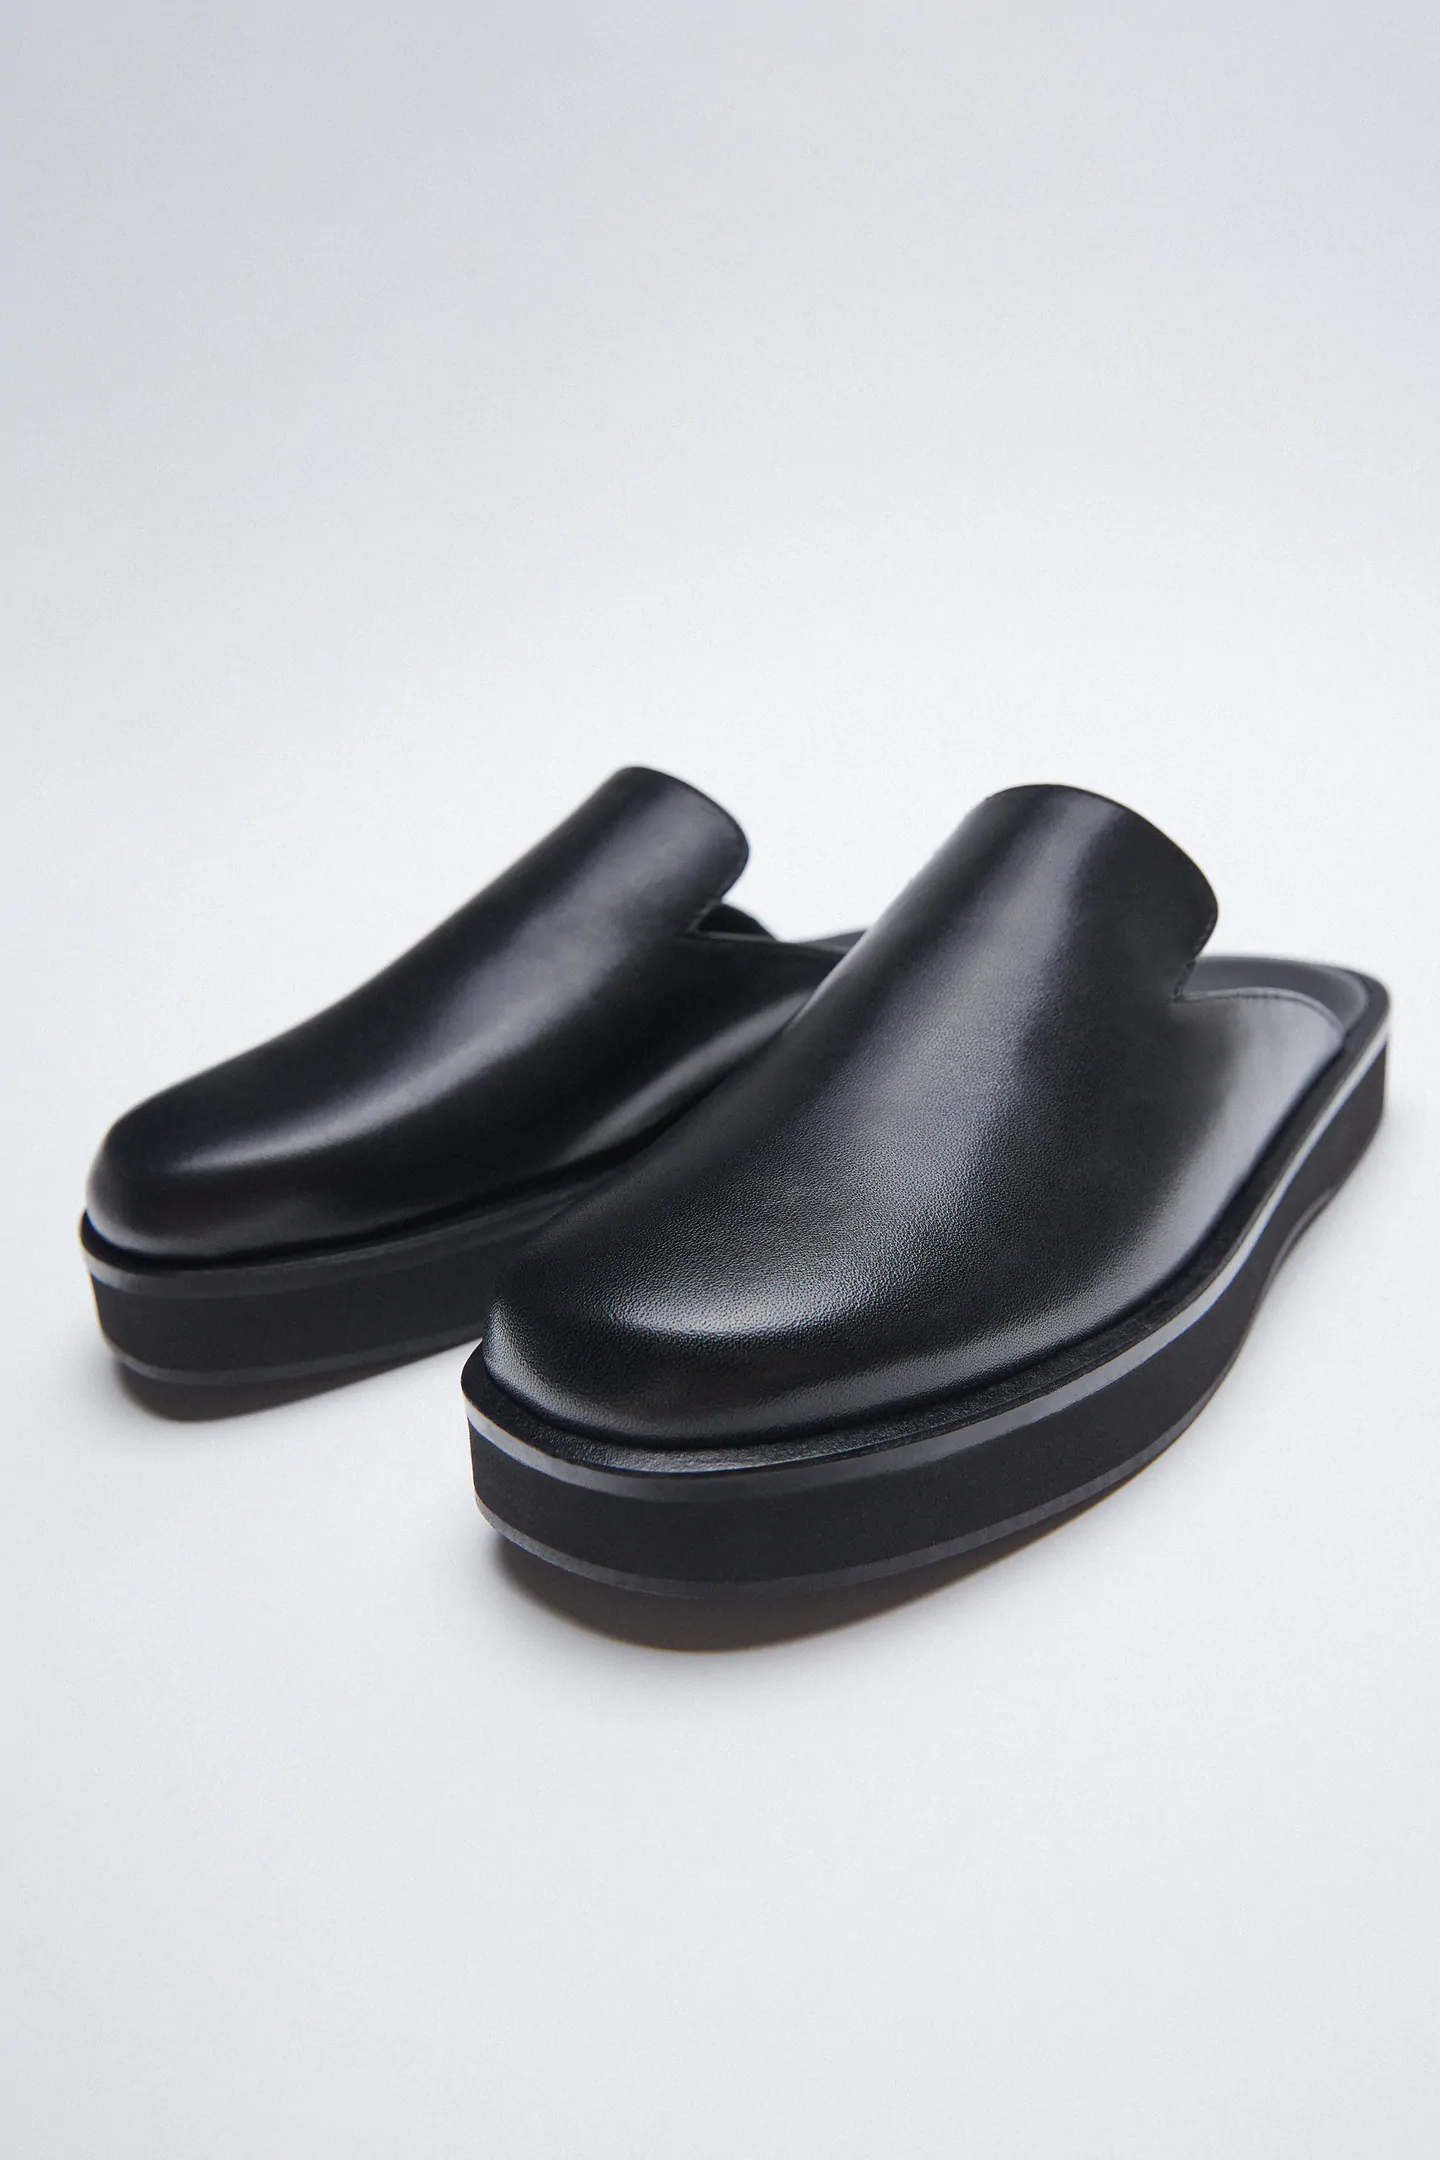 Zara + Minimalist Leather Clogs